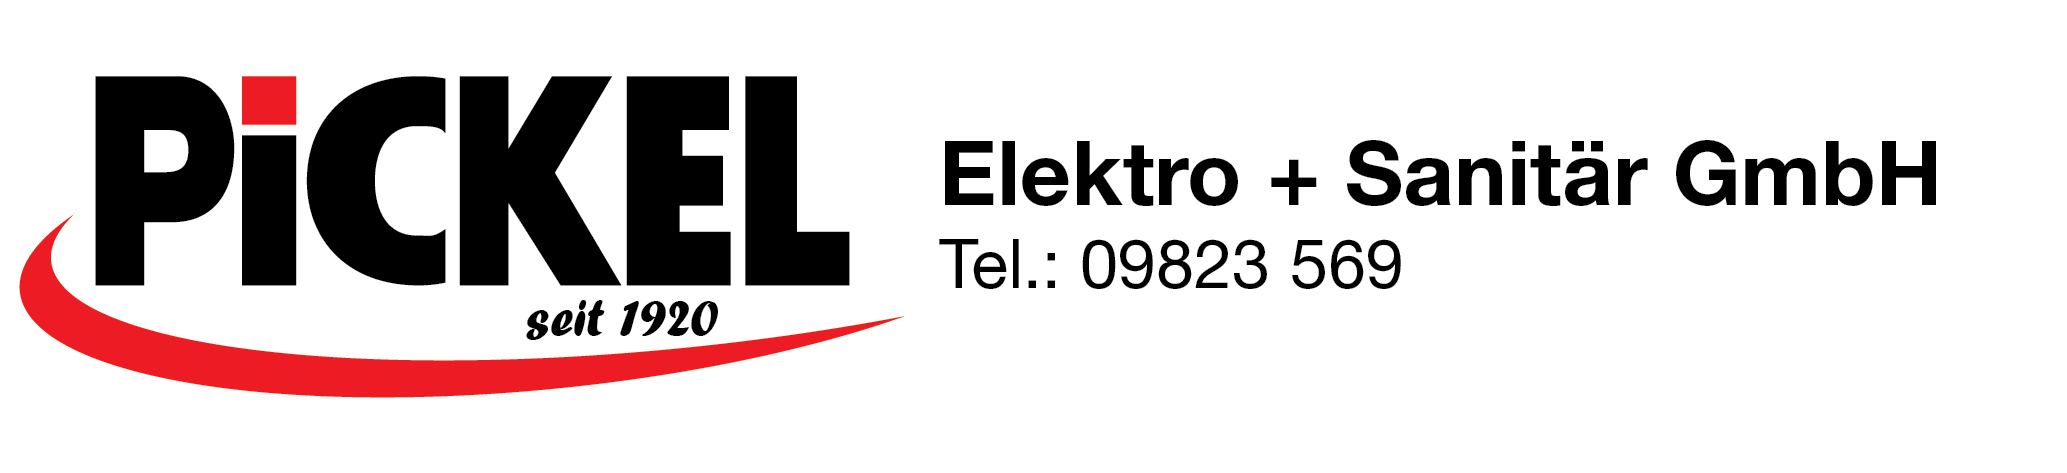 Pickel ElektroSanitr langTel Logo